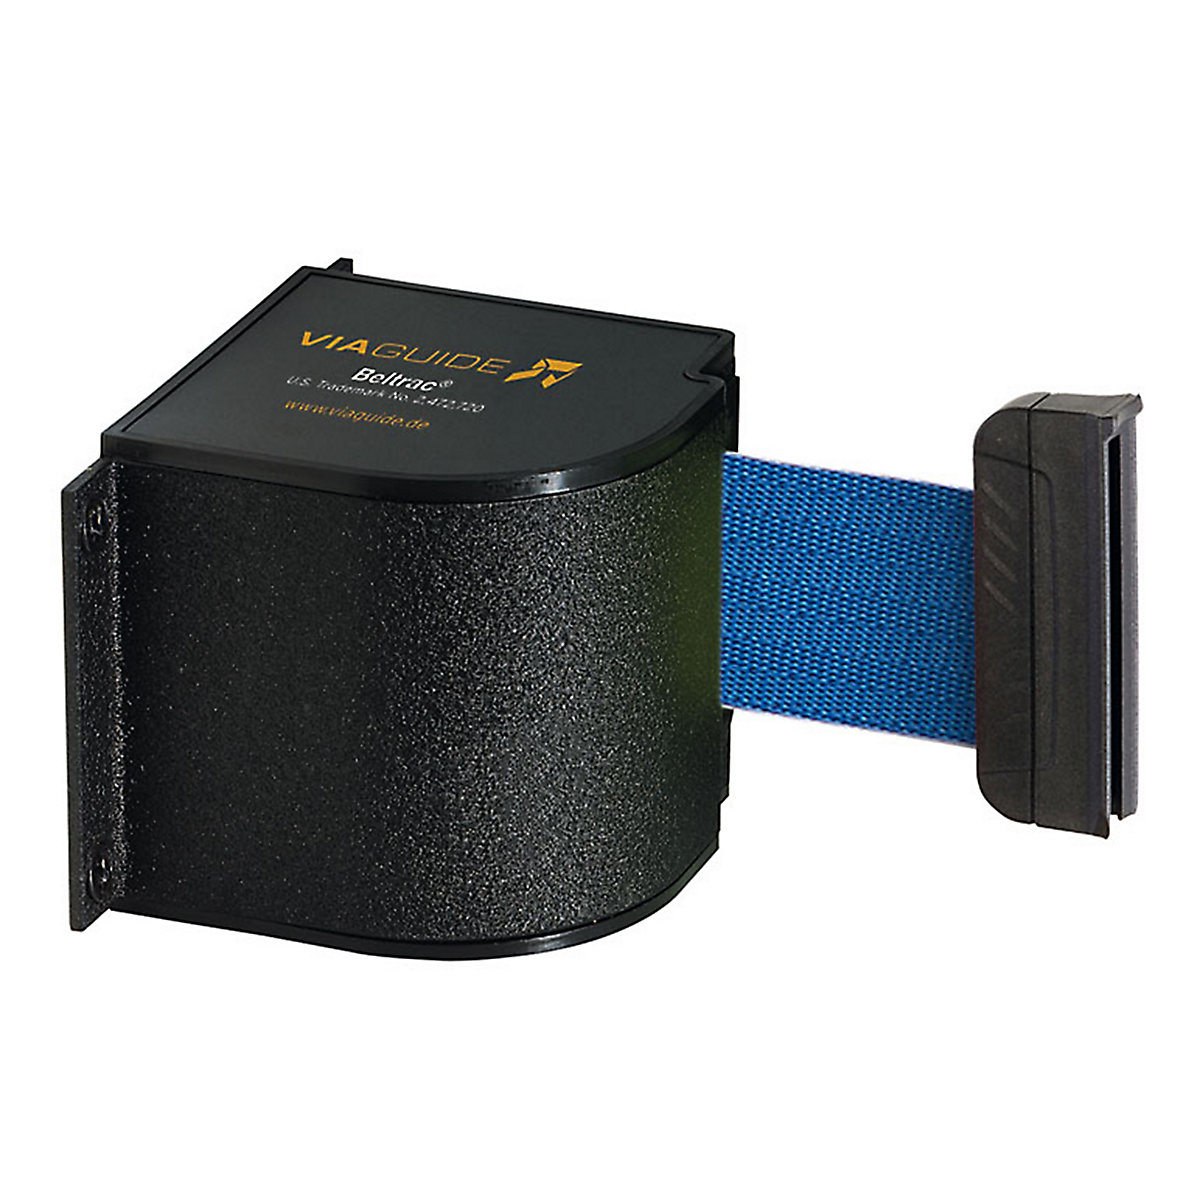 Cassete de cinta Wall Mount, extração máx. da cinta 5400 mm, cor da cinta azul-4